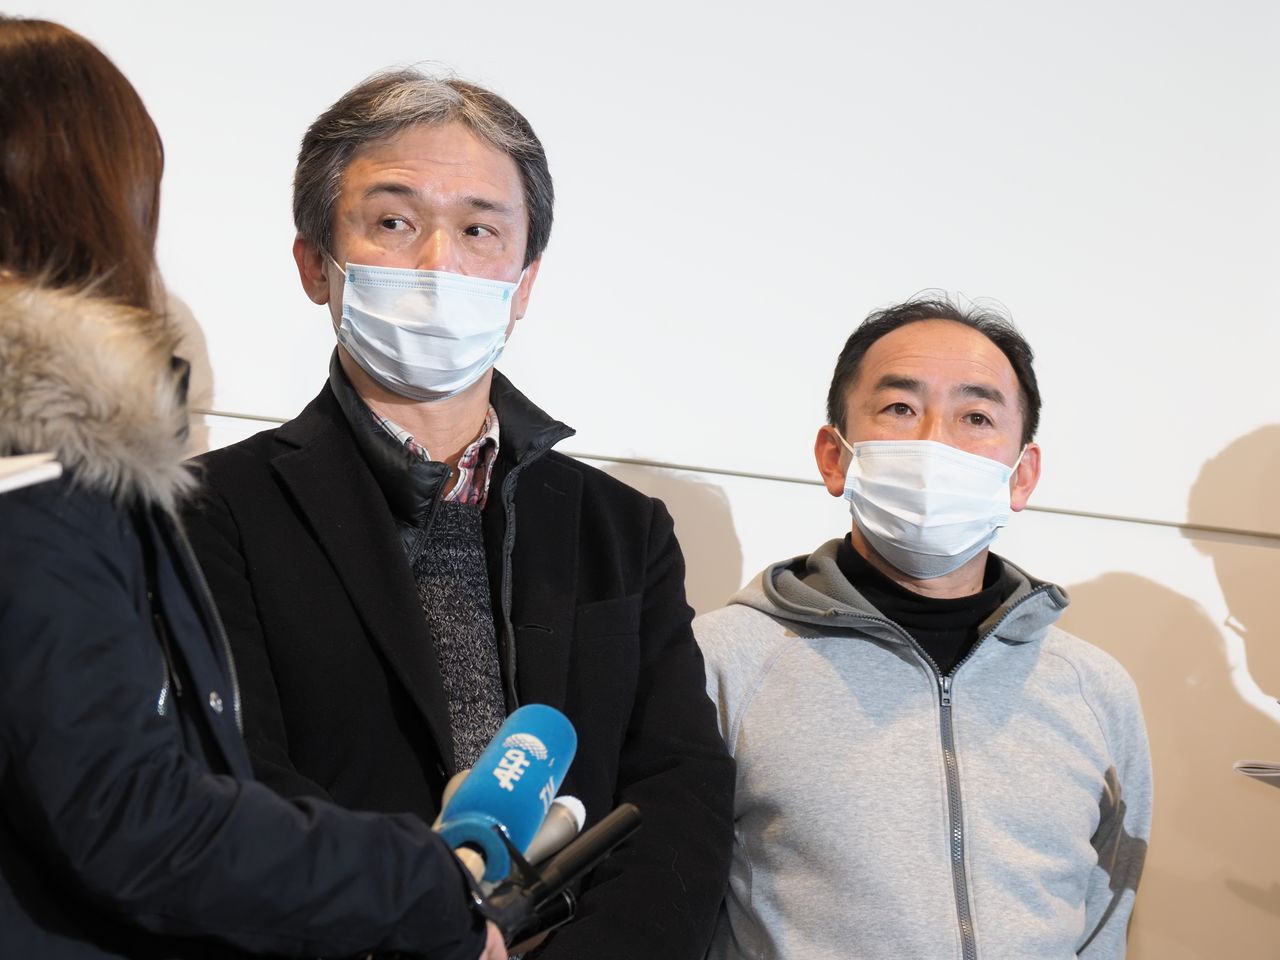 Des ressortissants japonais rapatriés de Wuhan par avion parlent à des représentants de la presse à l’aéroport Haneda le 29 janvier 2020.